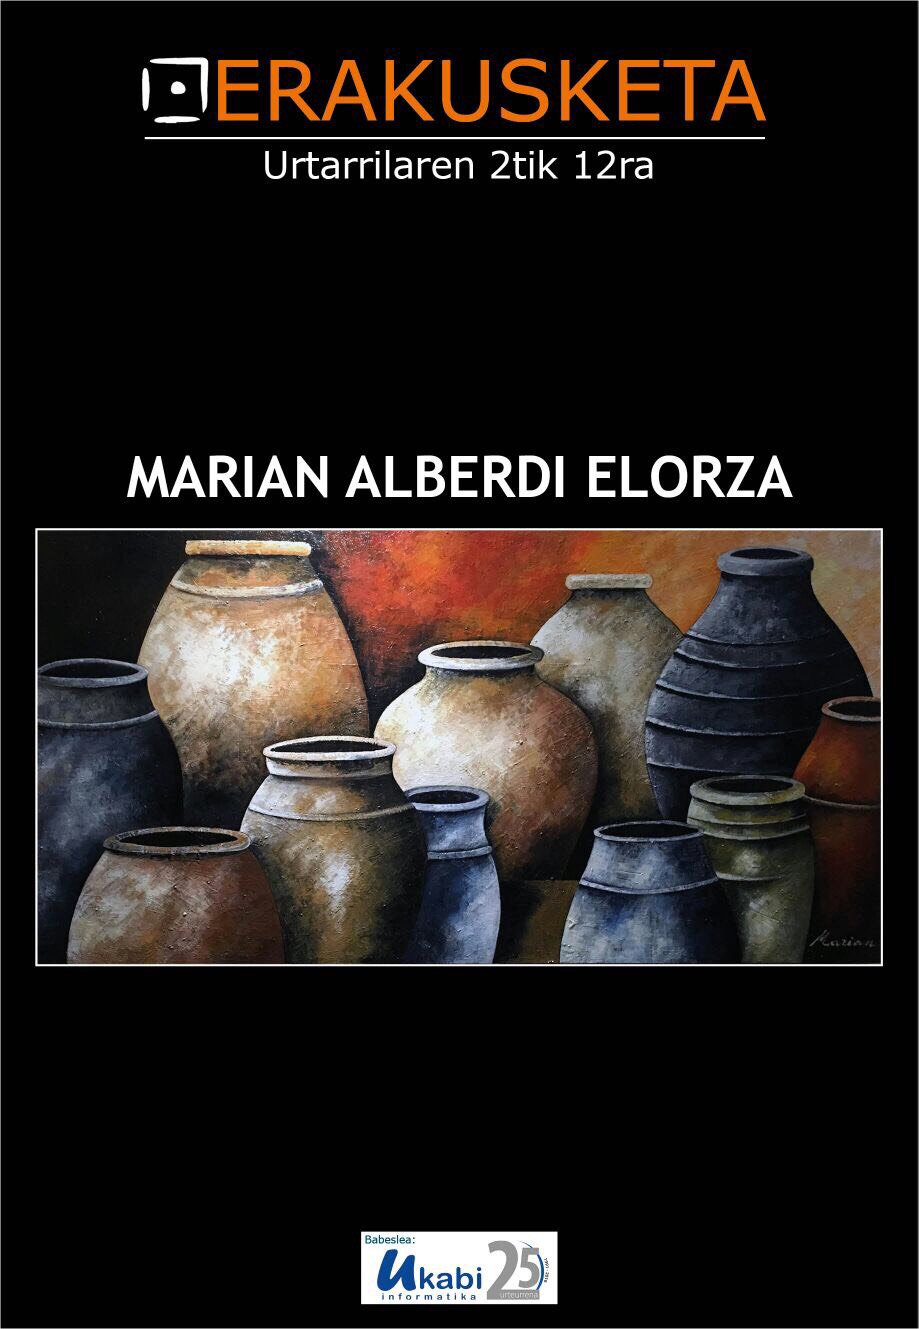 Marian Alberdi Elorza